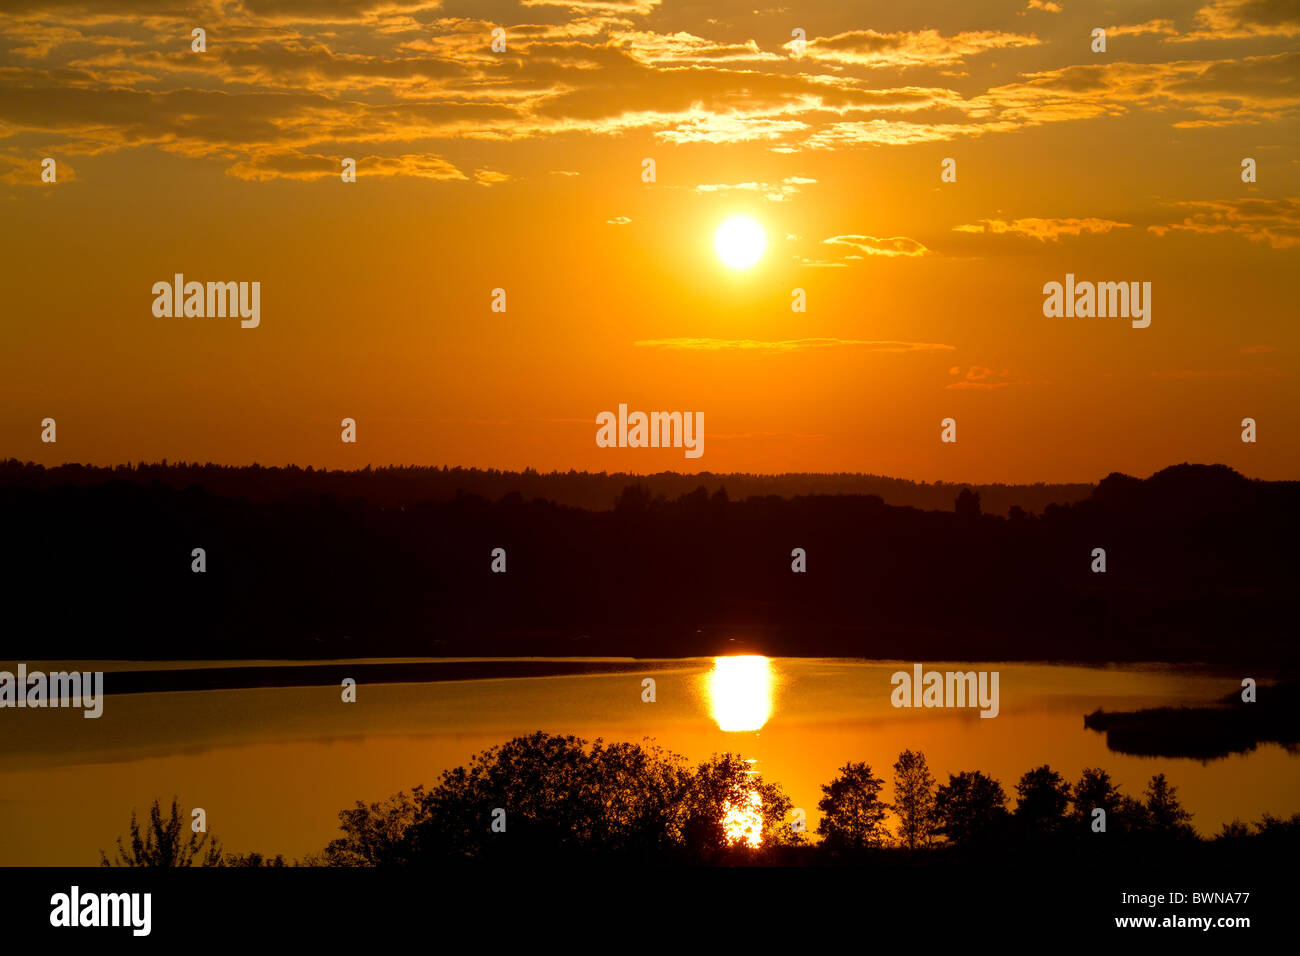 sunset on the lake Stock Photo